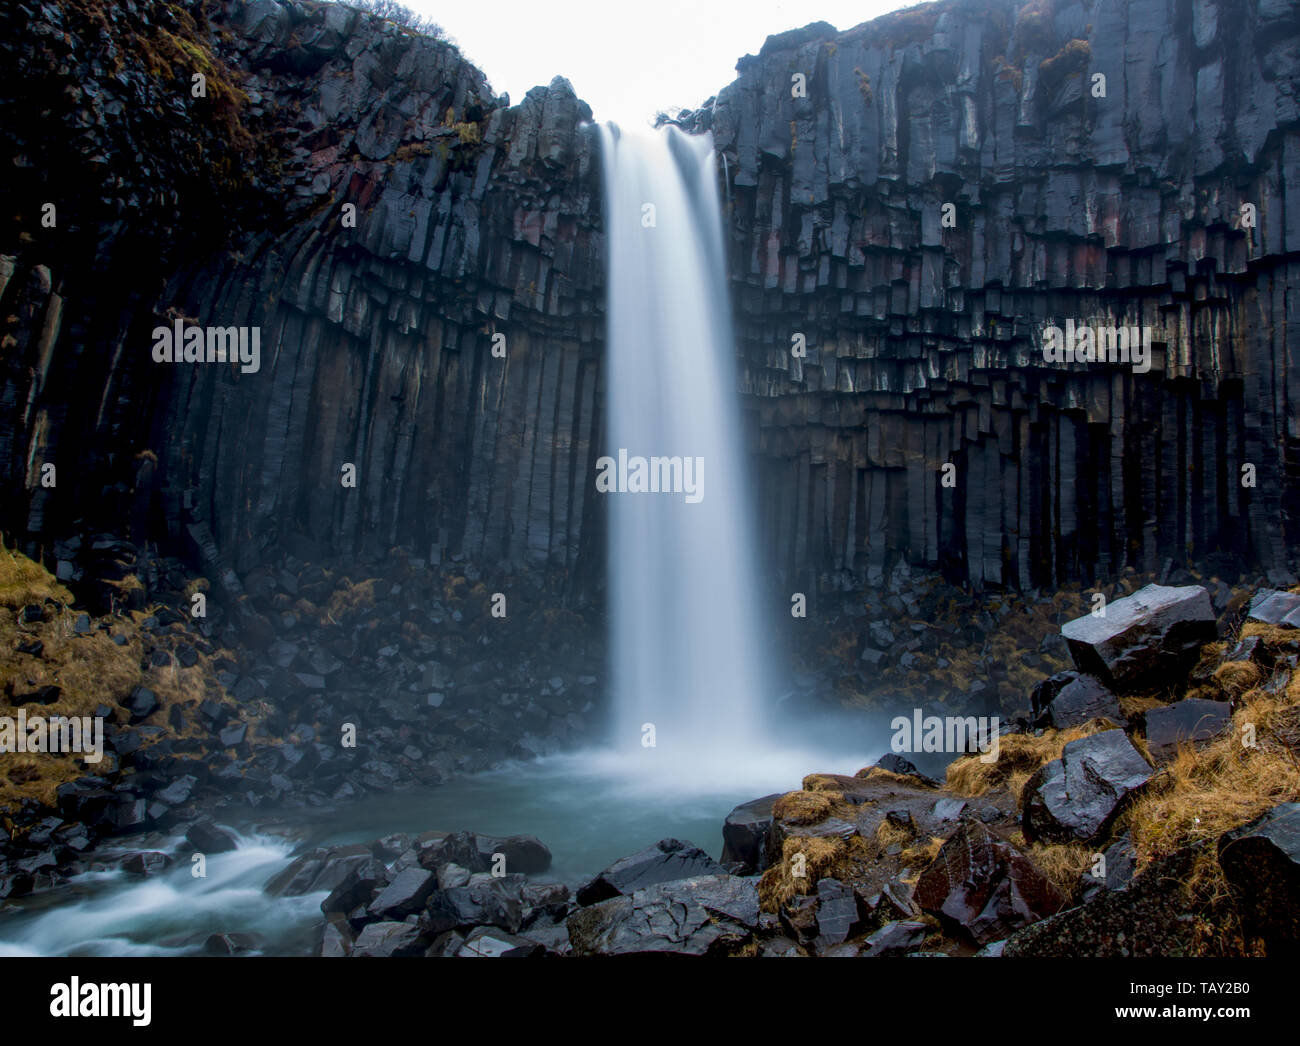 Cascade de Svartifoss entourée de colonnes de basalte dans le sud de l'Islande, l'effet voile mystique Banque D'Images